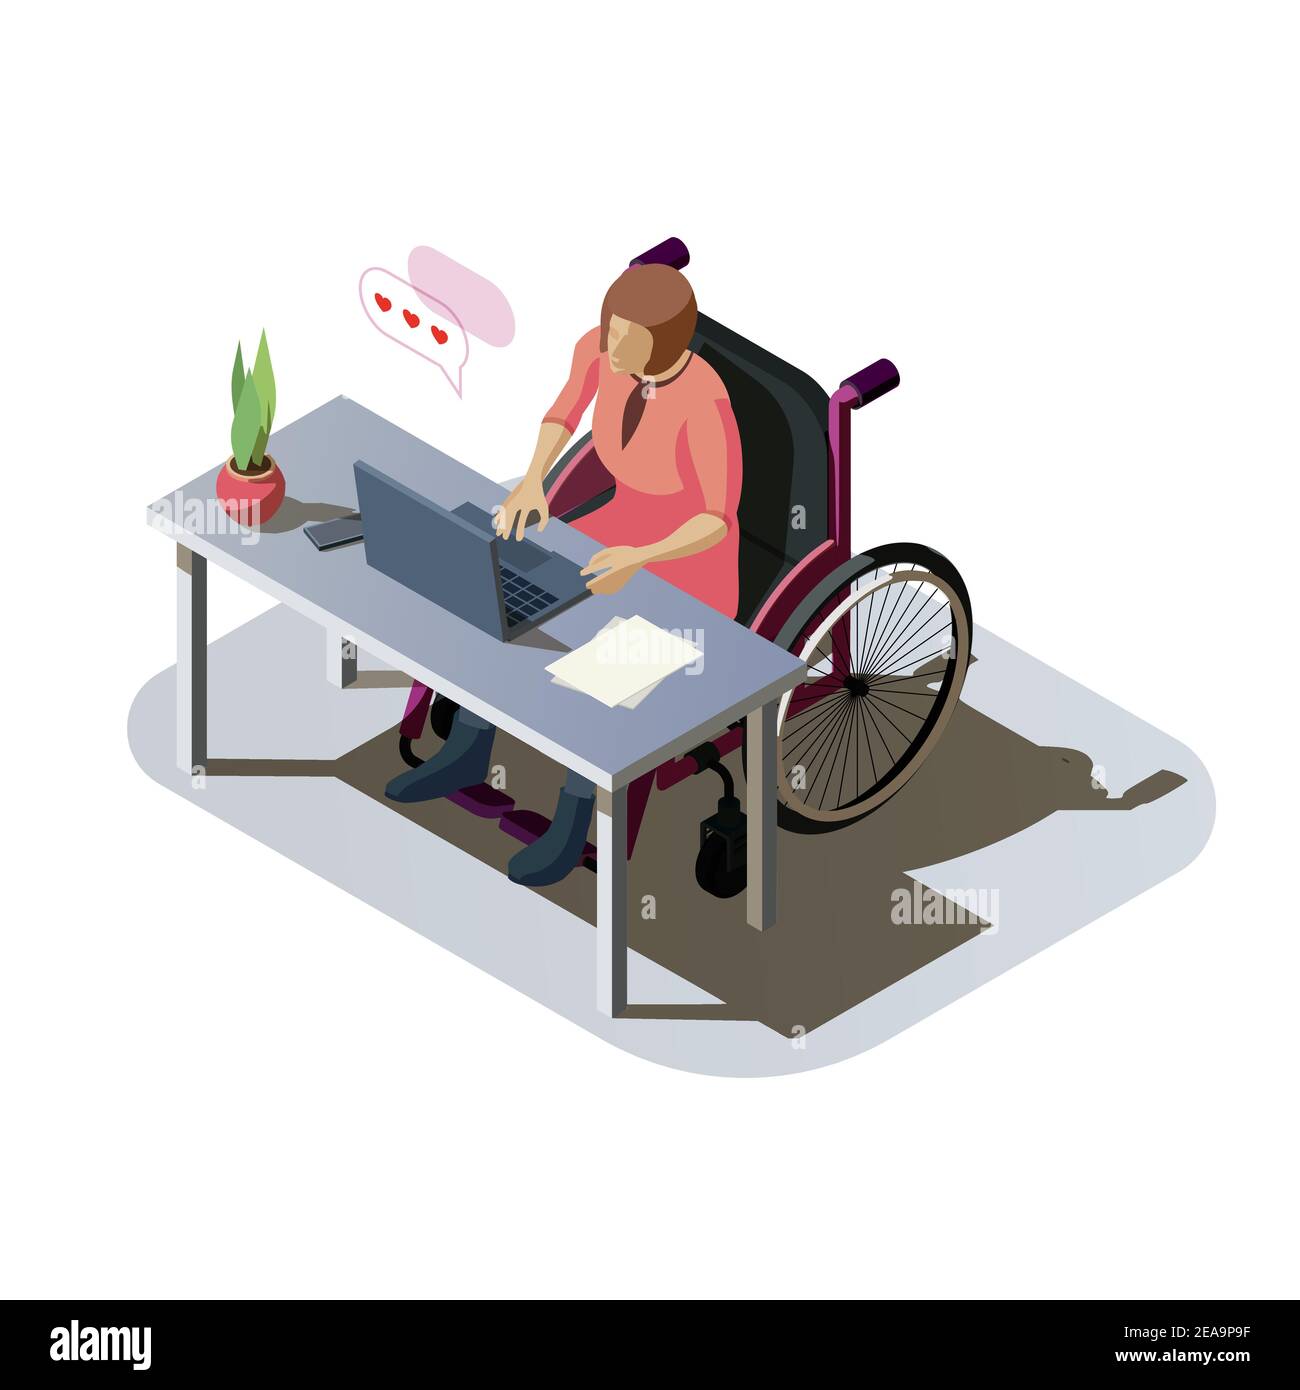 Frau mit Behinderung am Schreibtisch, die an einem Computer arbeitet. Ungültige Dame mit Verletzung im Rollstuhl, die Arbeit macht oder online kommuniziert. Behinderter Charakter am Arbeitsplatz, isometrische Illustration. Stock Vektor